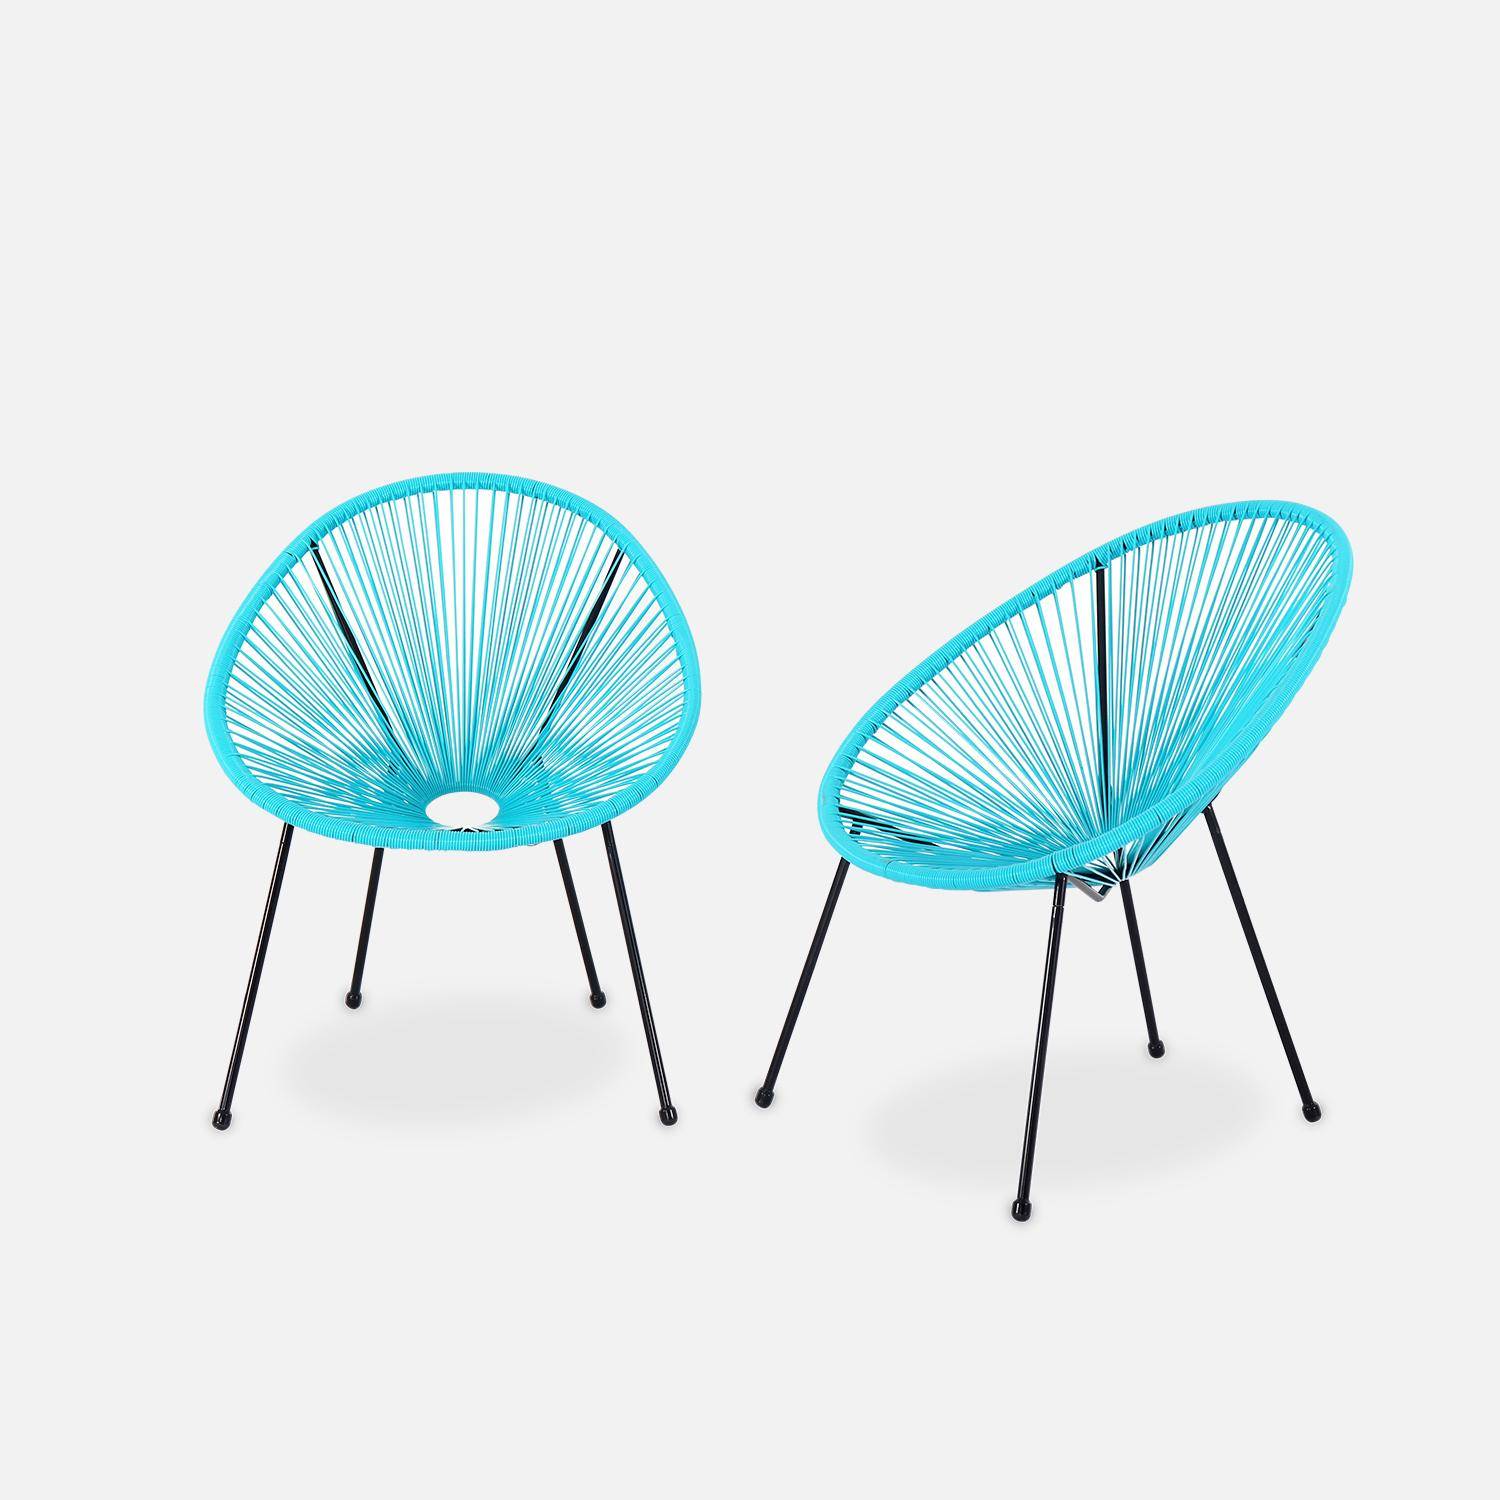 Lot de 2 fauteuils design Oeuf - Acapulco Turquoise - Fauteuils 4 pieds design rétro, cordage plastique, intérieur / extérieur Photo1